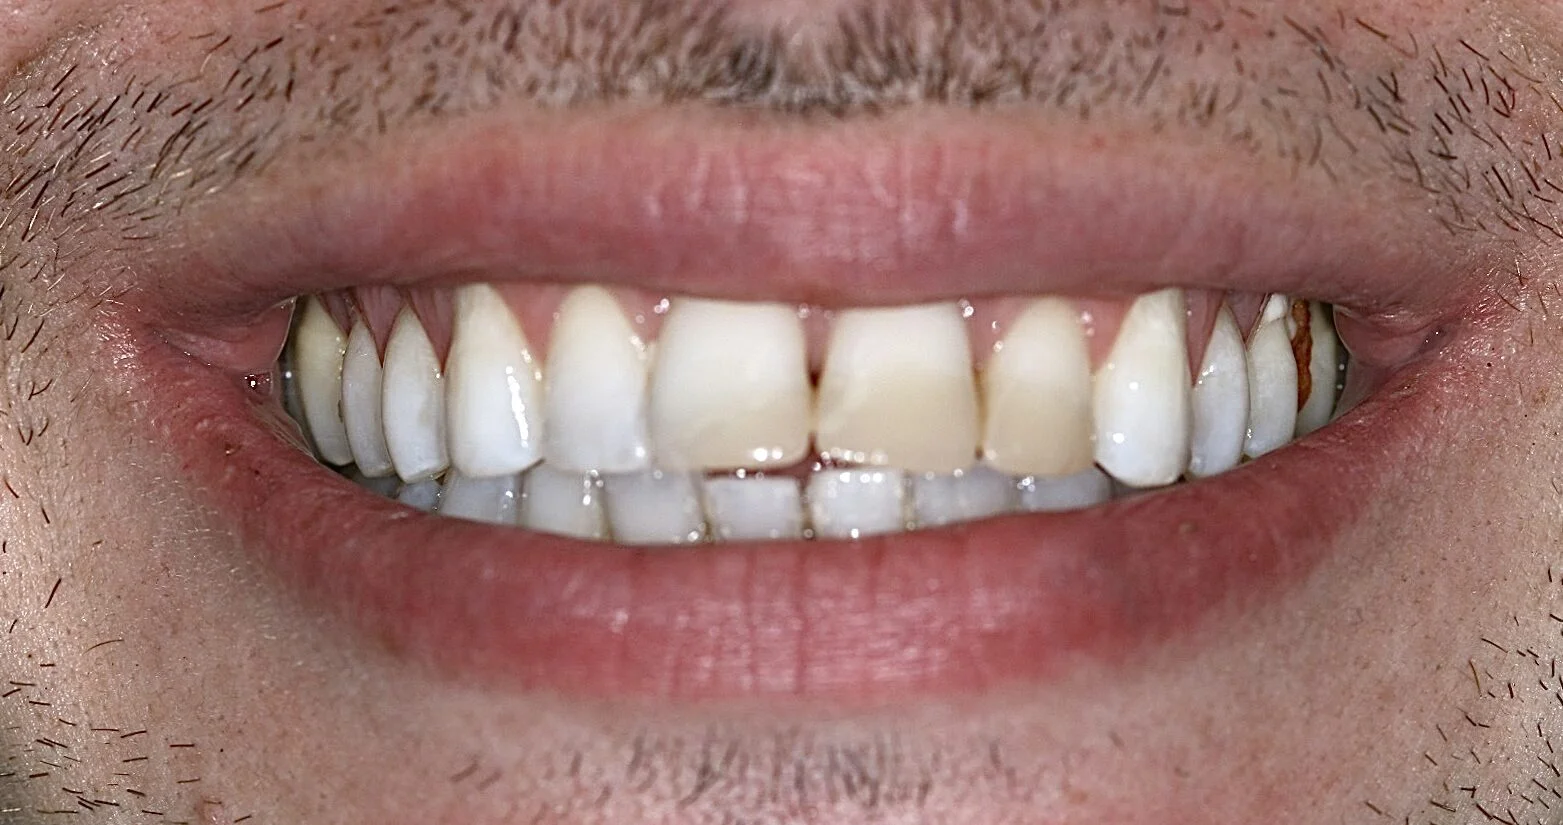 Image showing teeth before dental veneers